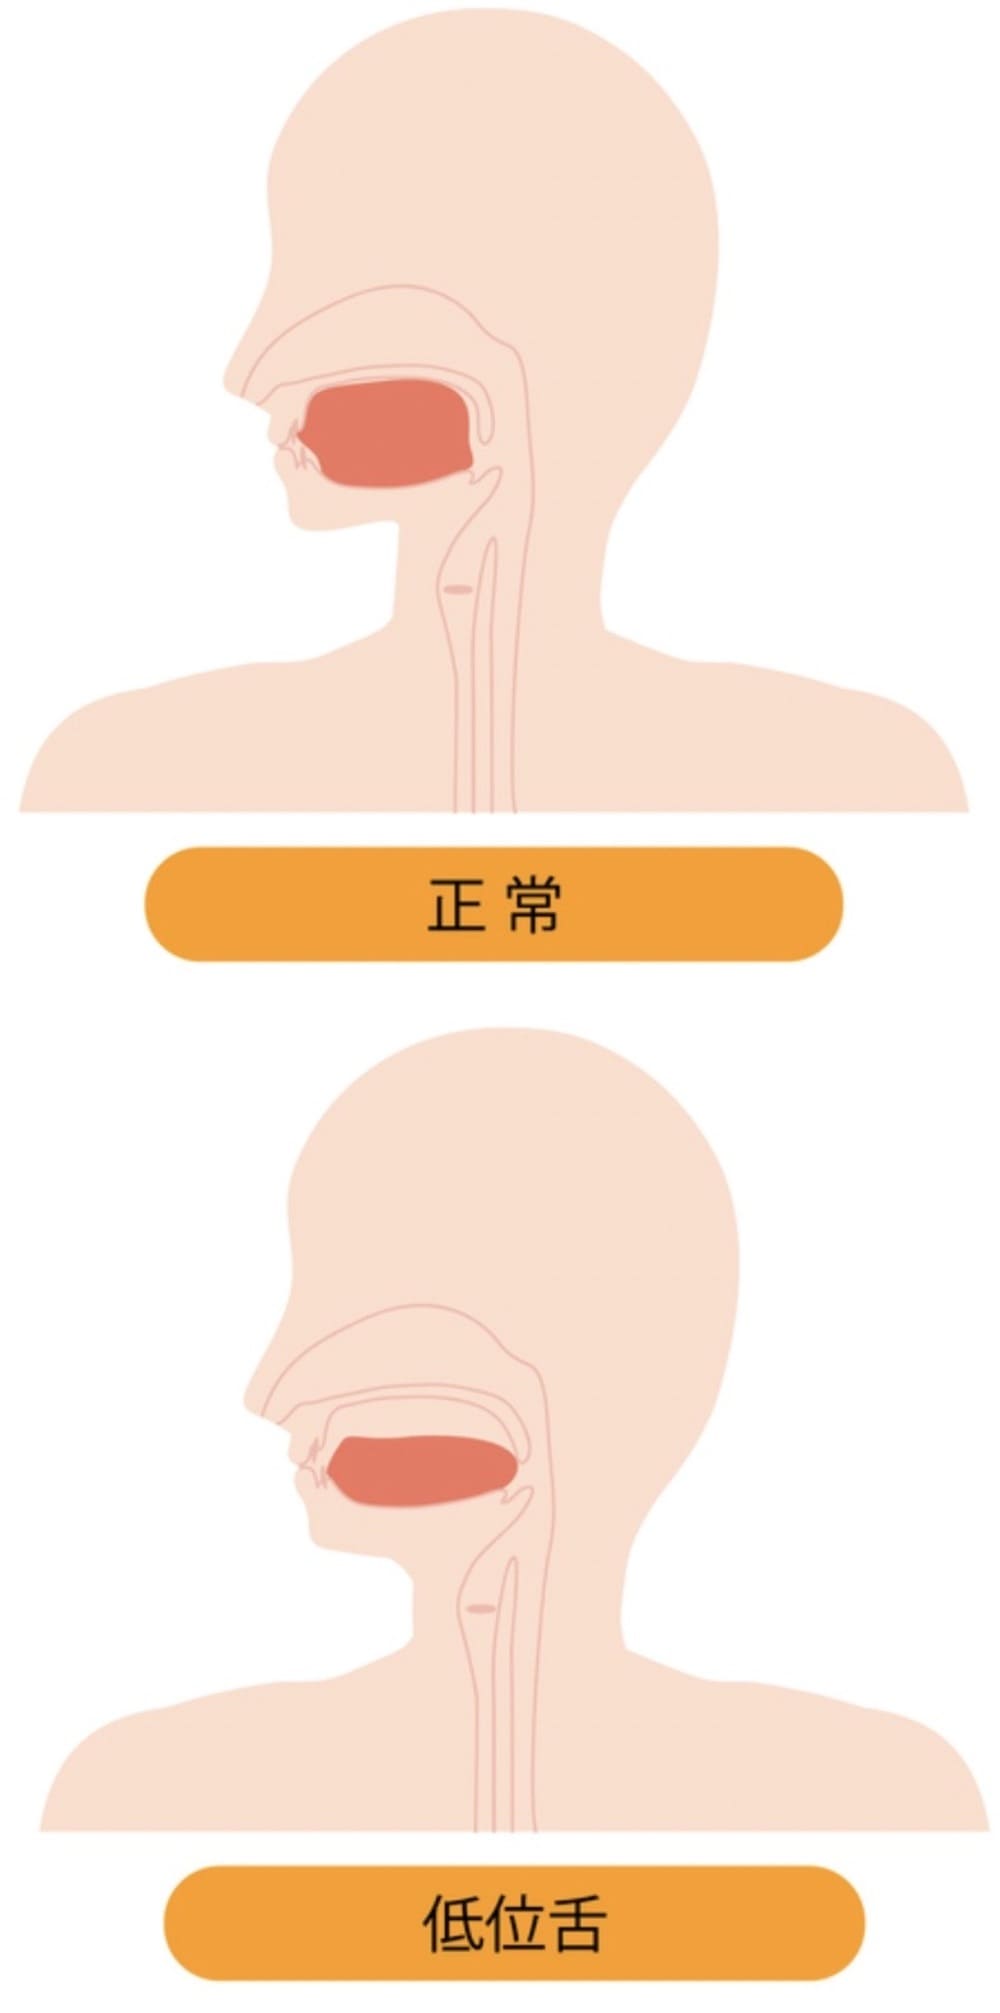 低位舌を示す画像